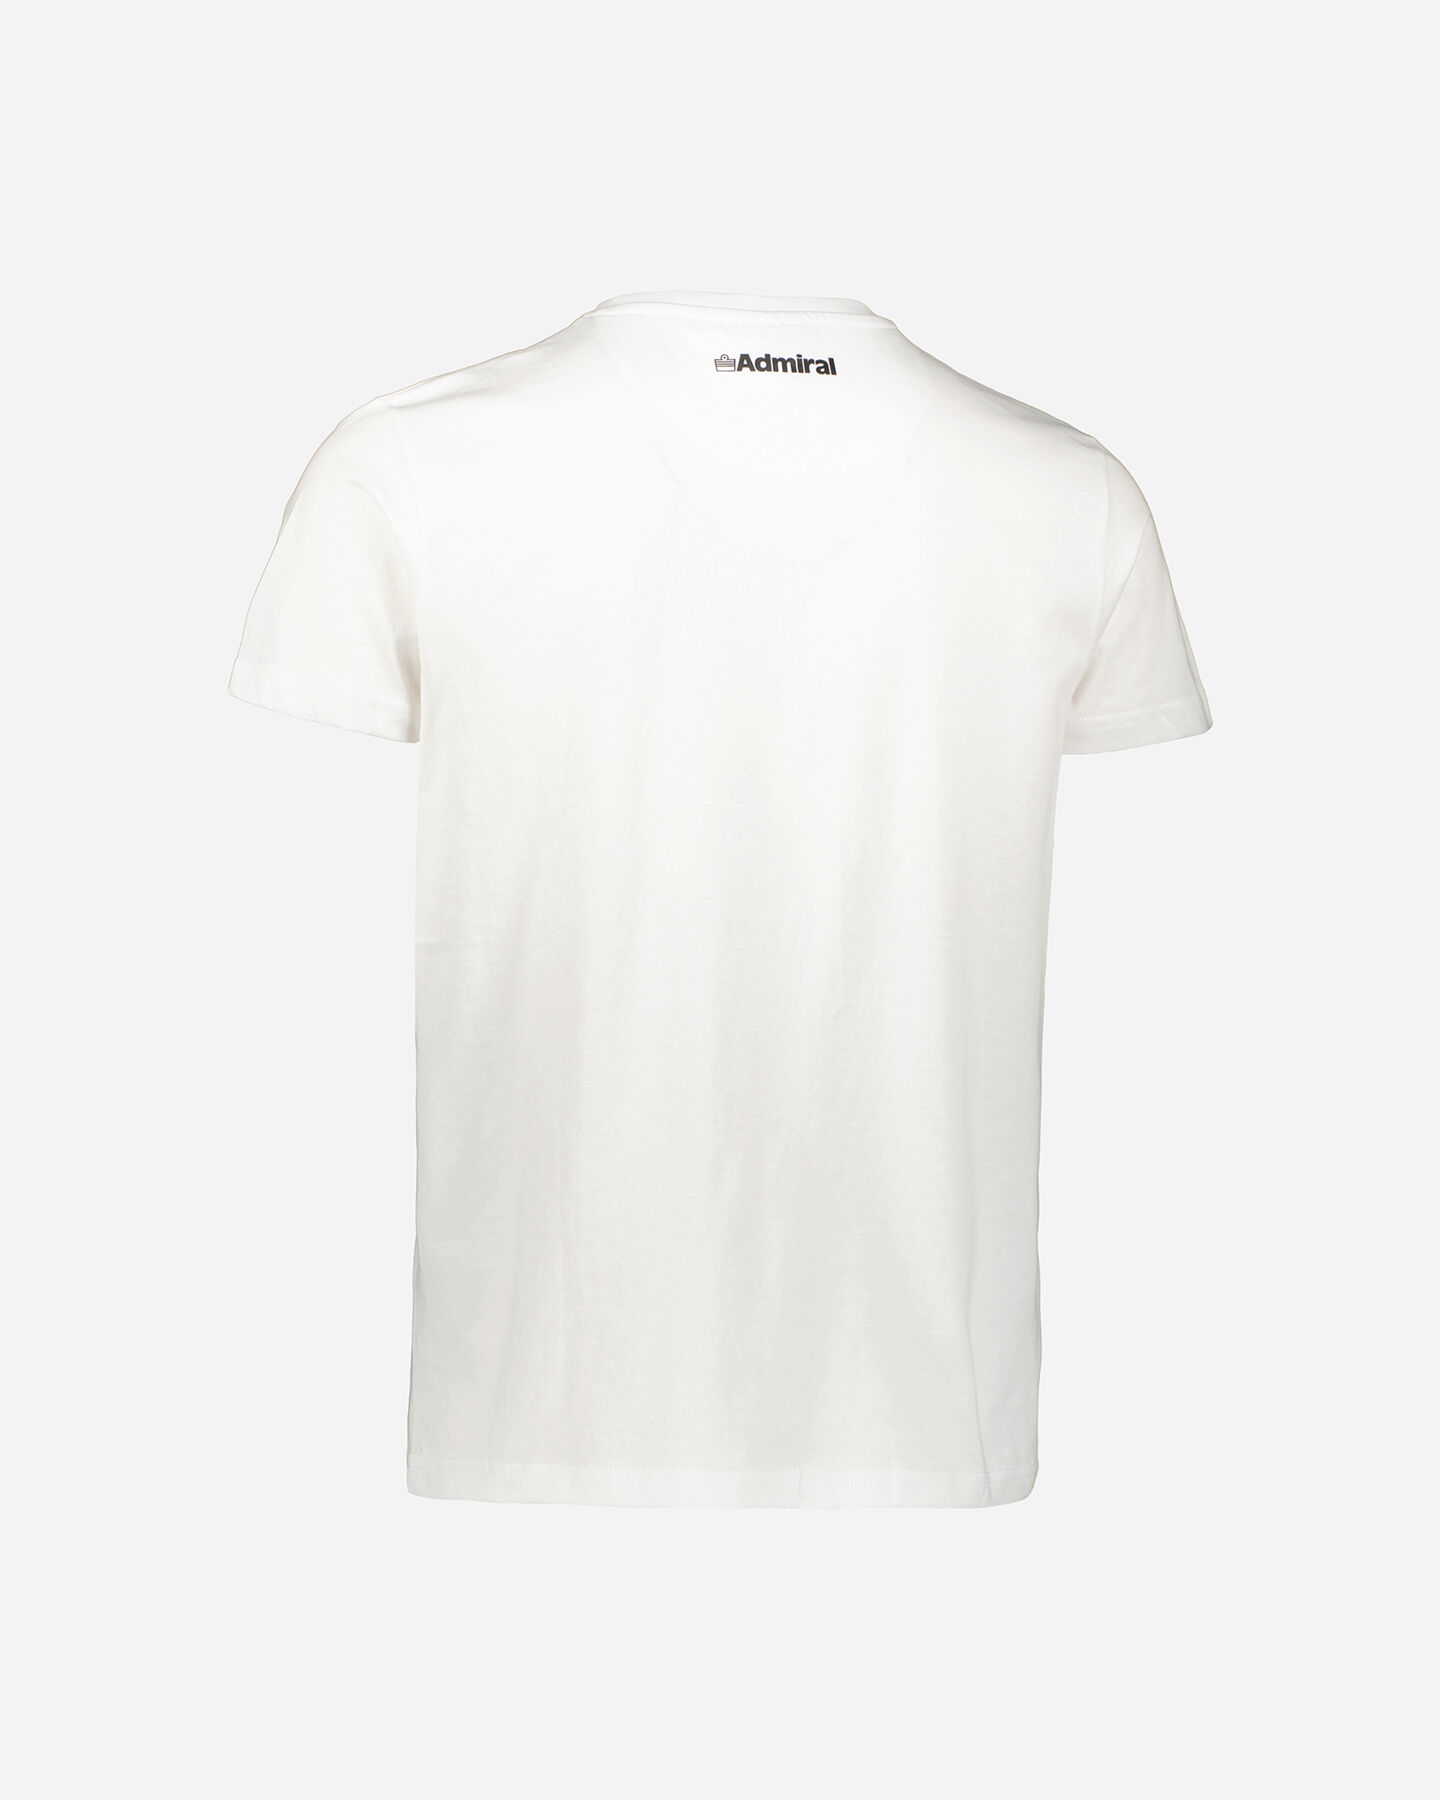  T-Shirt ADMIRAL MIAMI BEACH M S4102984|001|M scatto 1